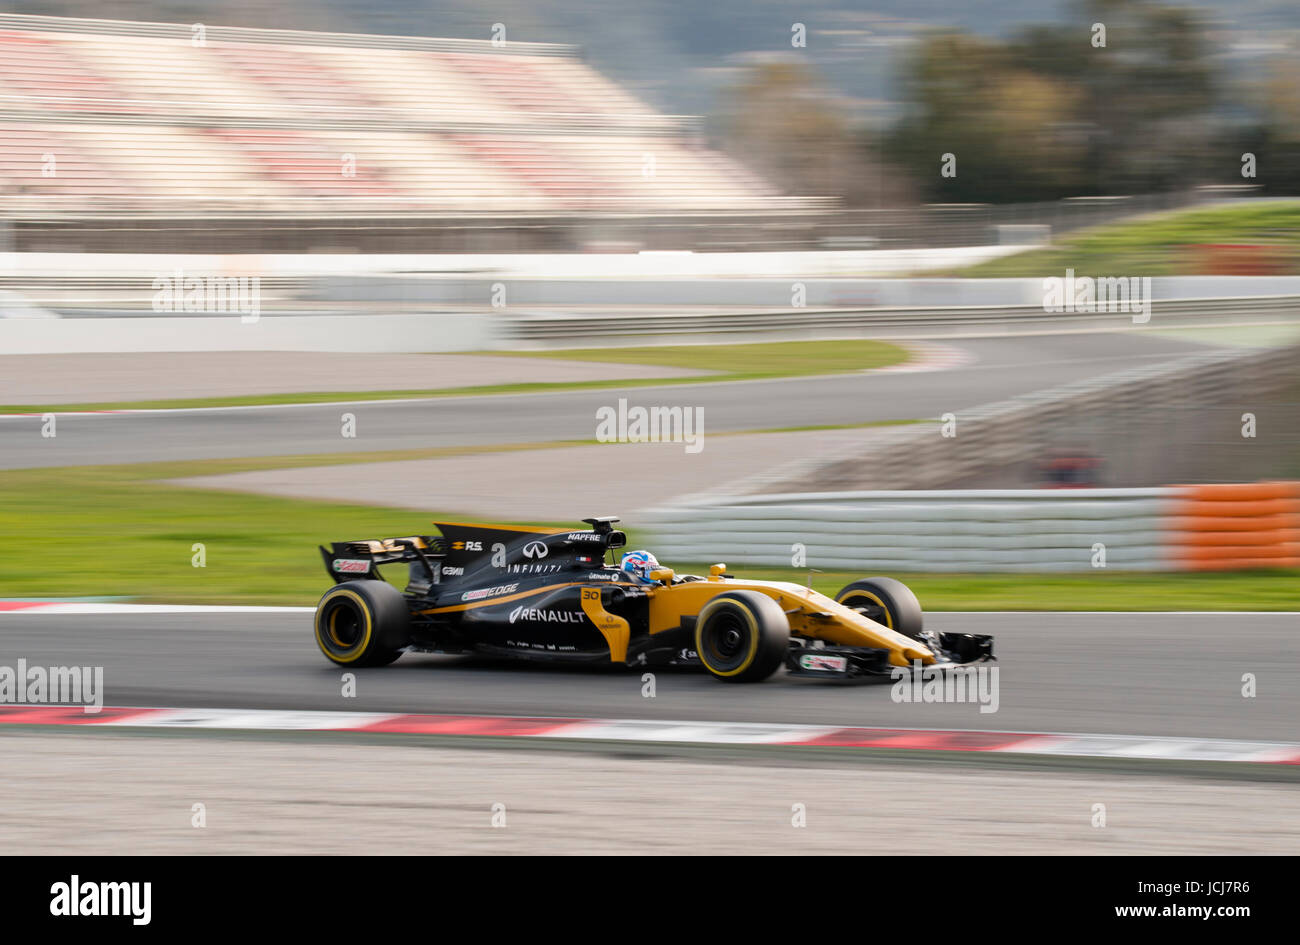 Jolyon Palmer, conductor del Renault Sport F1 Team, en acción durante la segunda jornada de la prueba de Fórmula 1 en el Circuit de Catalunya. Foto de stock